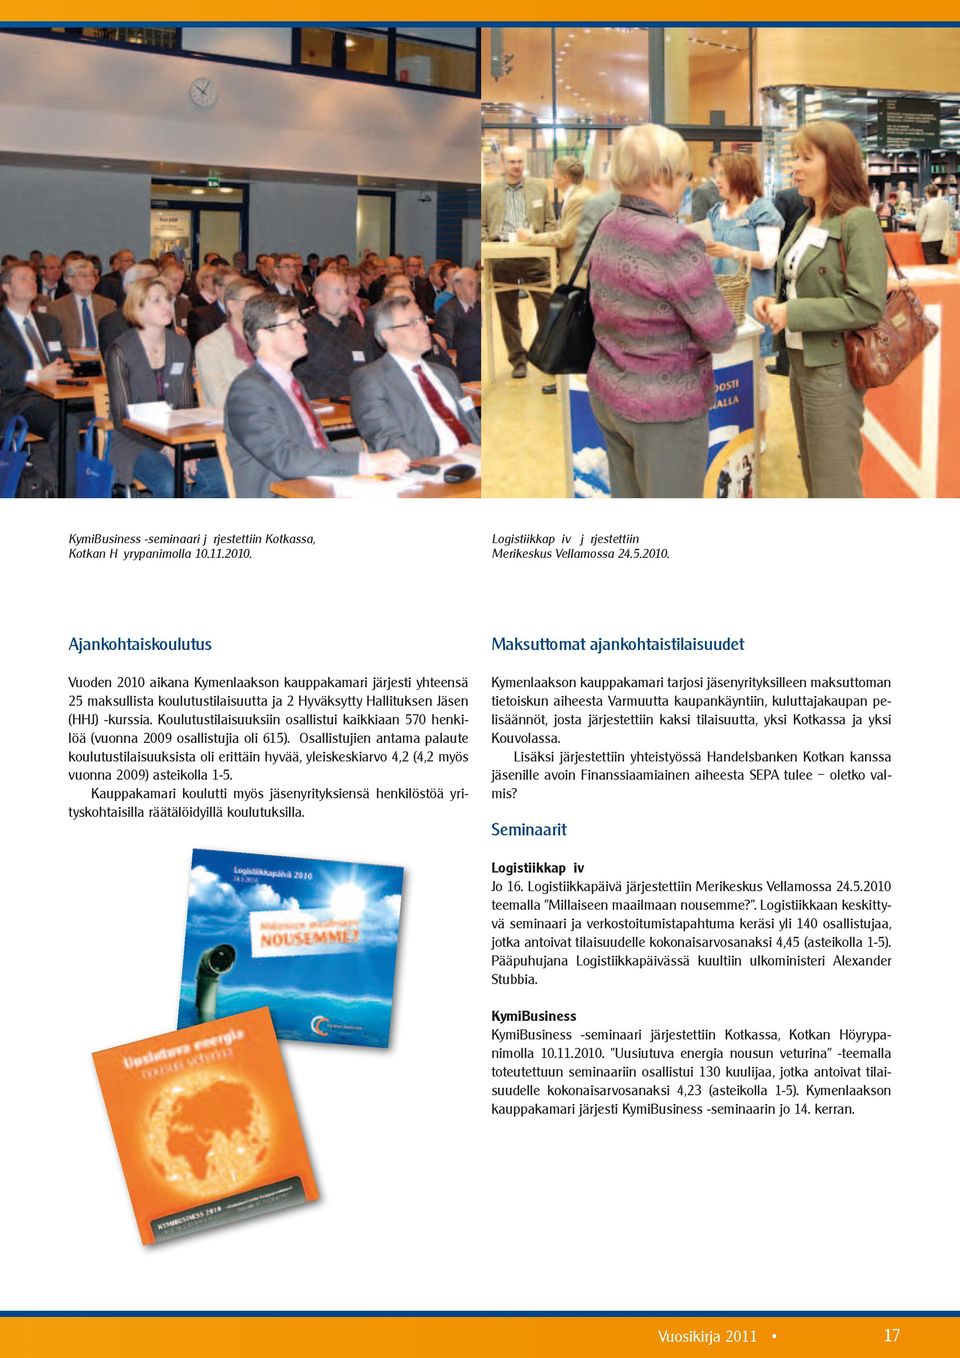 Ajankohtaiskoulutus Vuoden 2010 aikana Kymenlaakson kauppakamari järjesti yhteensä 25 maksullista koulutustilaisuutta ja 2 Hyväksytty Hallituksen Jäsen (HHJ) -kurssia.